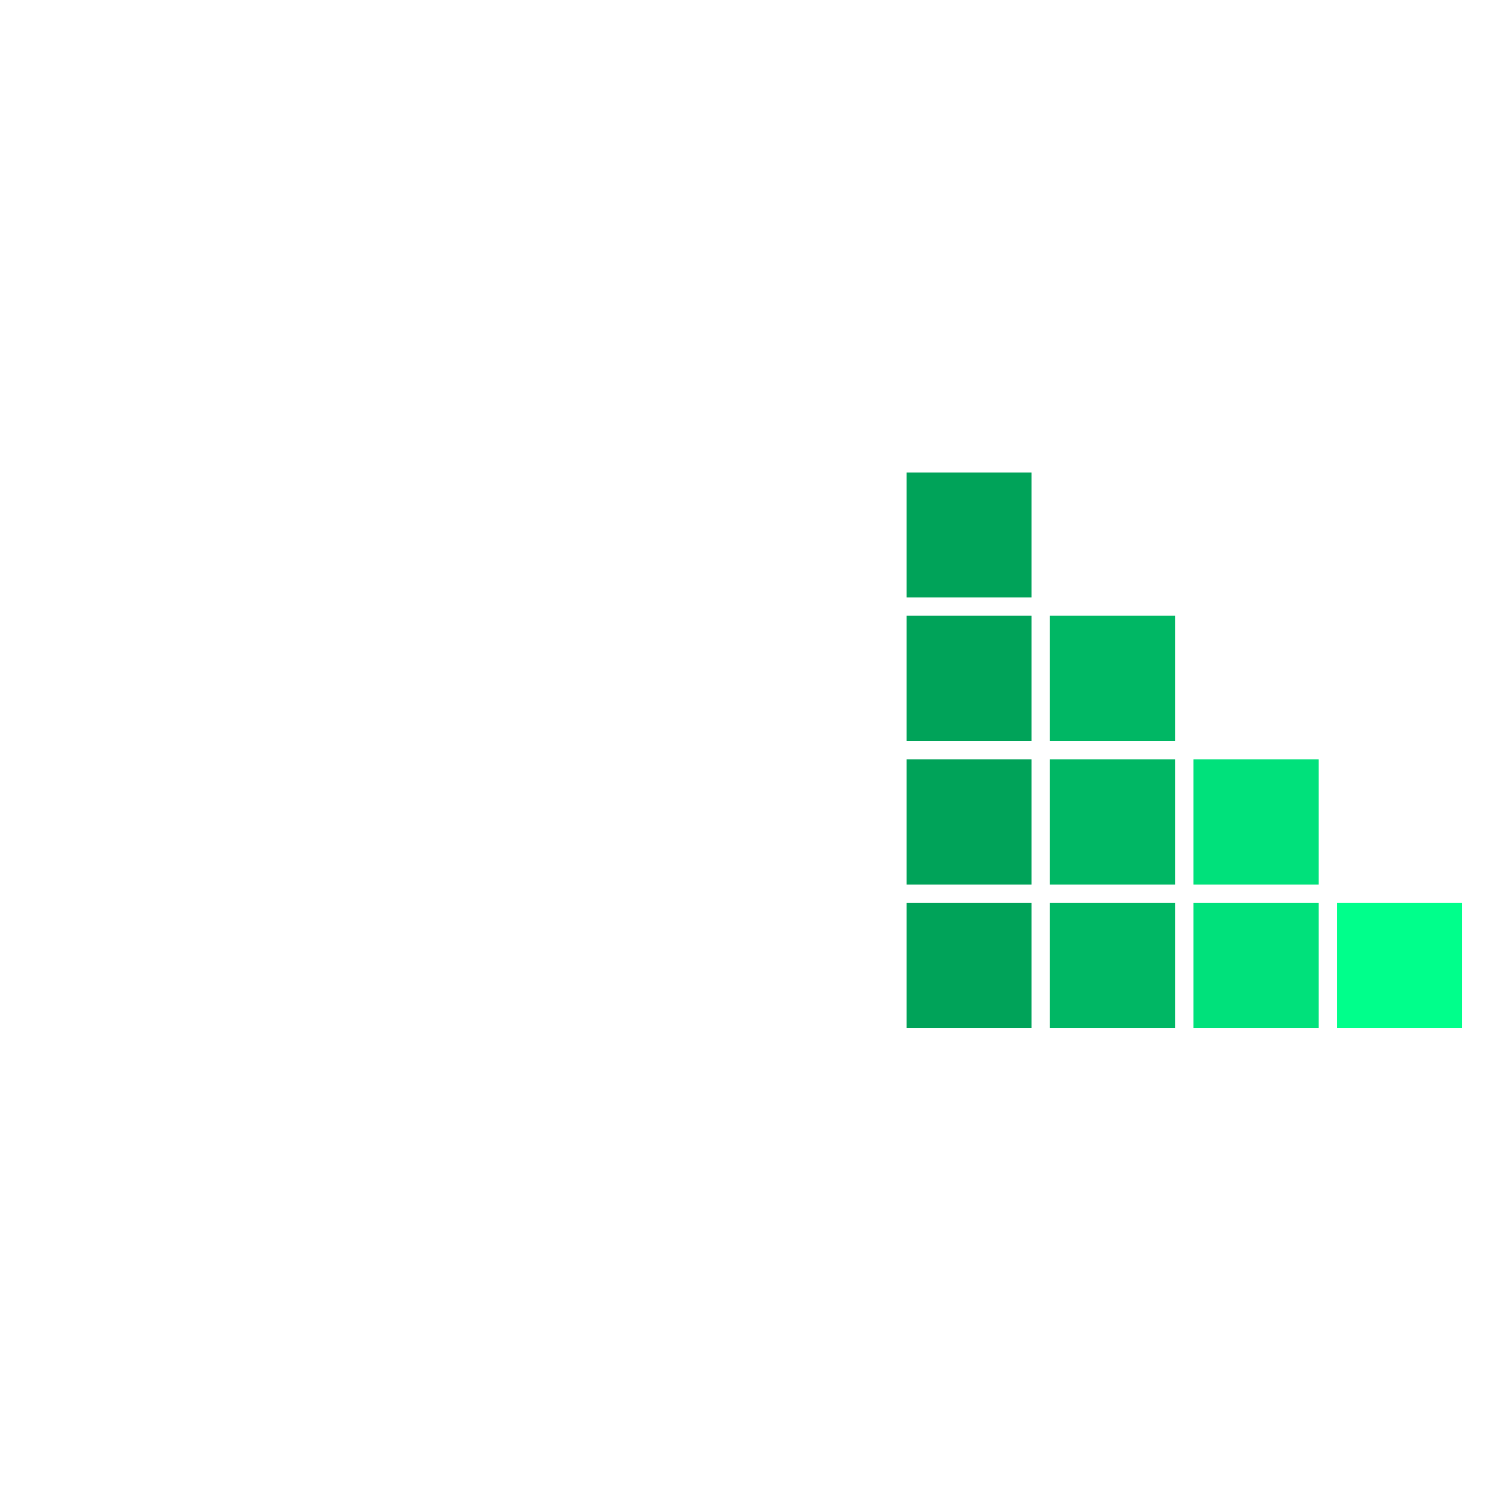 Portaltramites.com